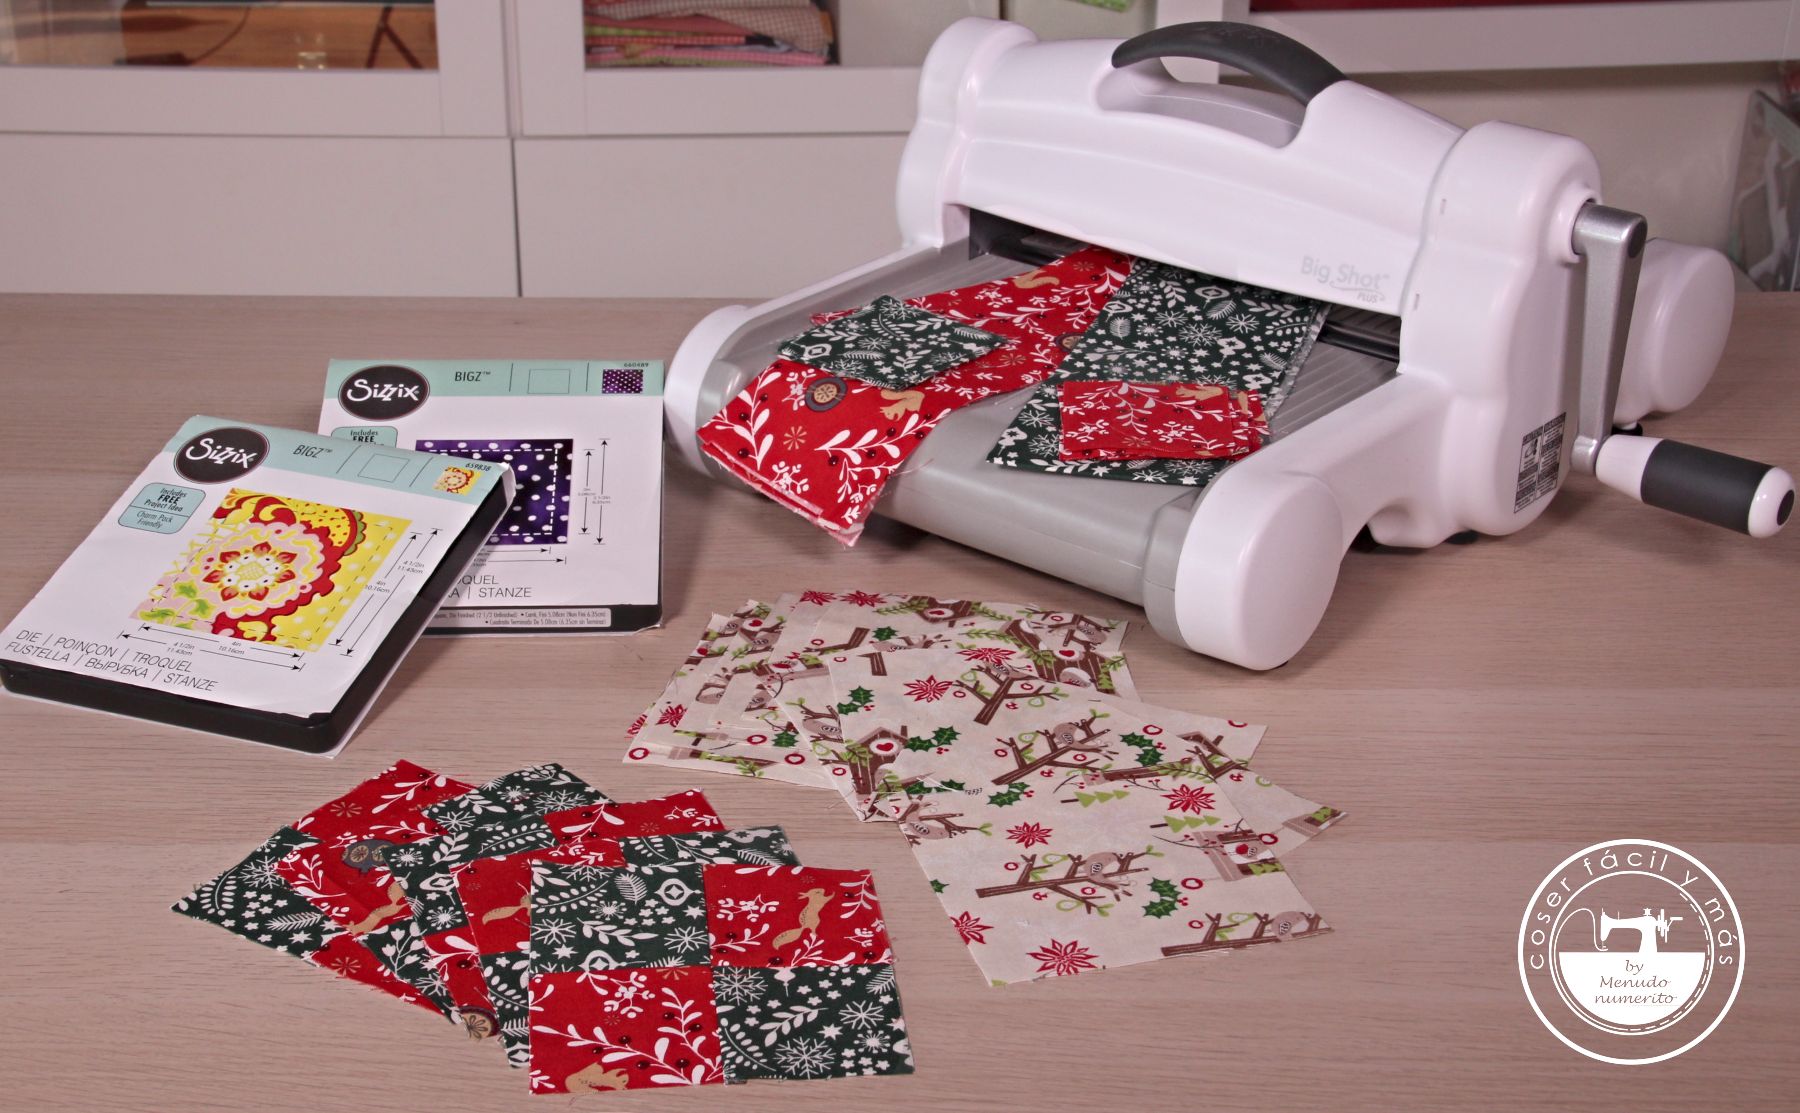 camino de mesa patchwork navidad coser facil blogs de costura